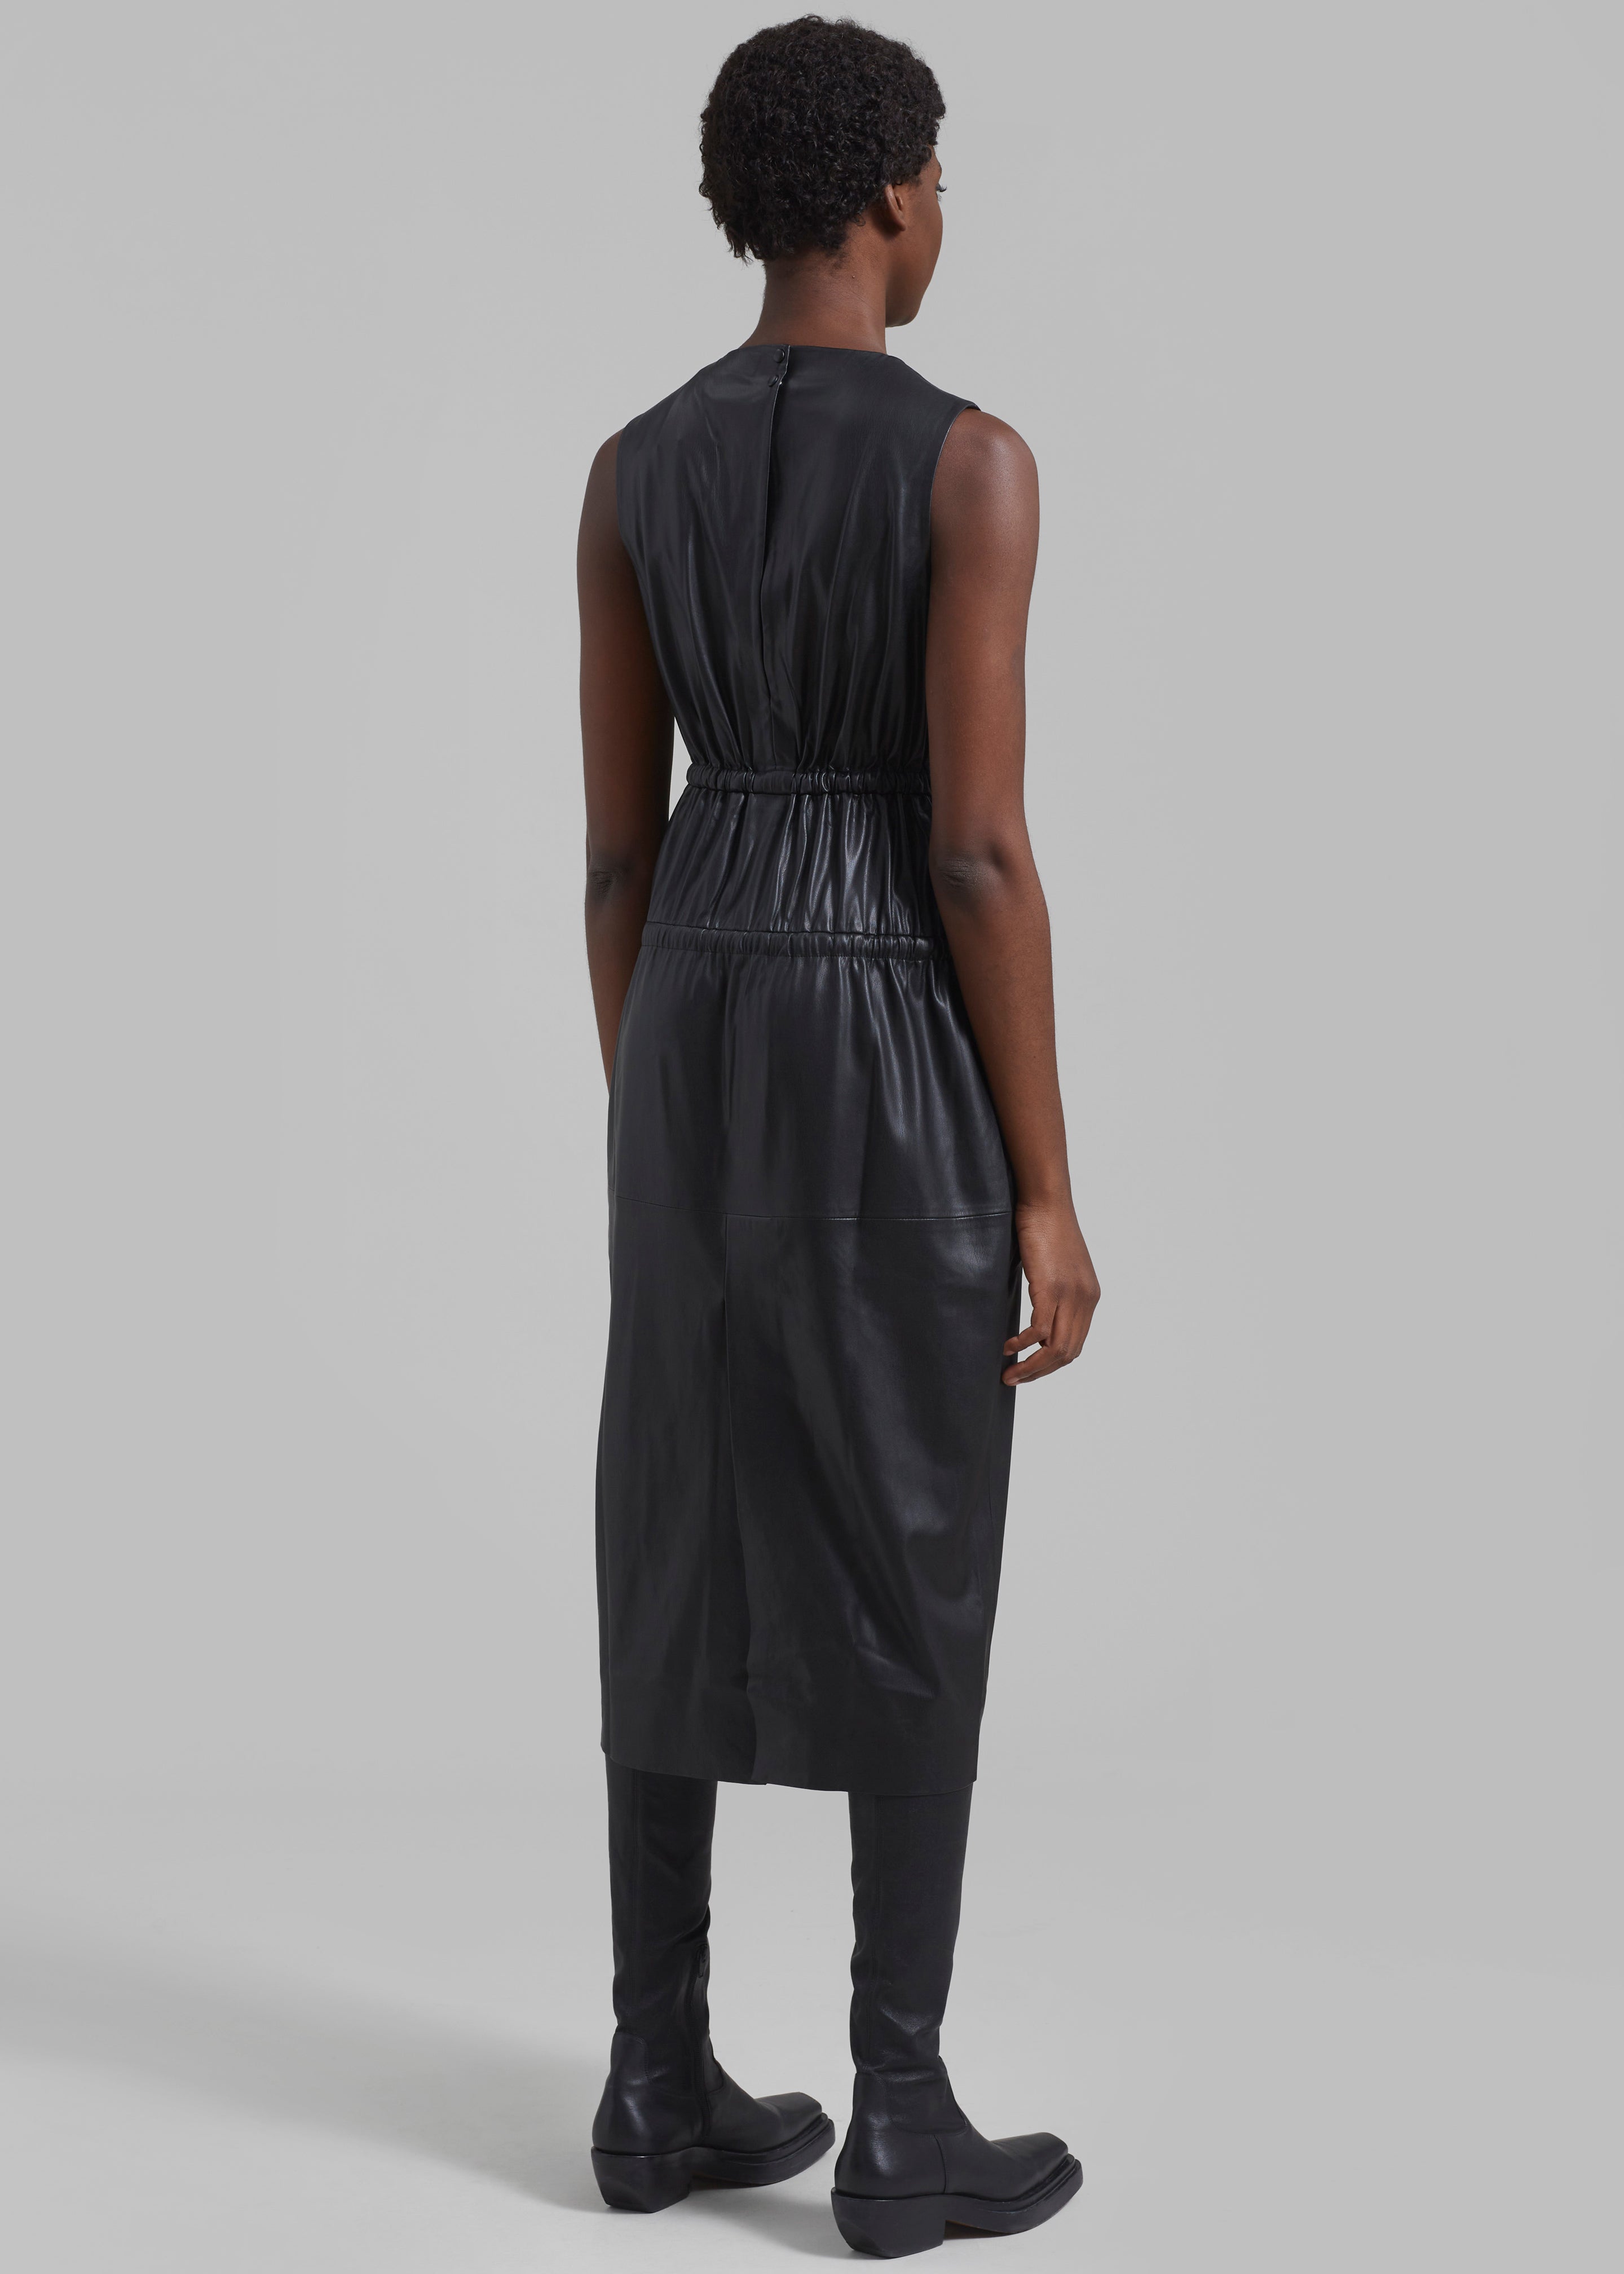 Proenza Schouler White Label Faux Leather Drawstring Dress - Black - 6